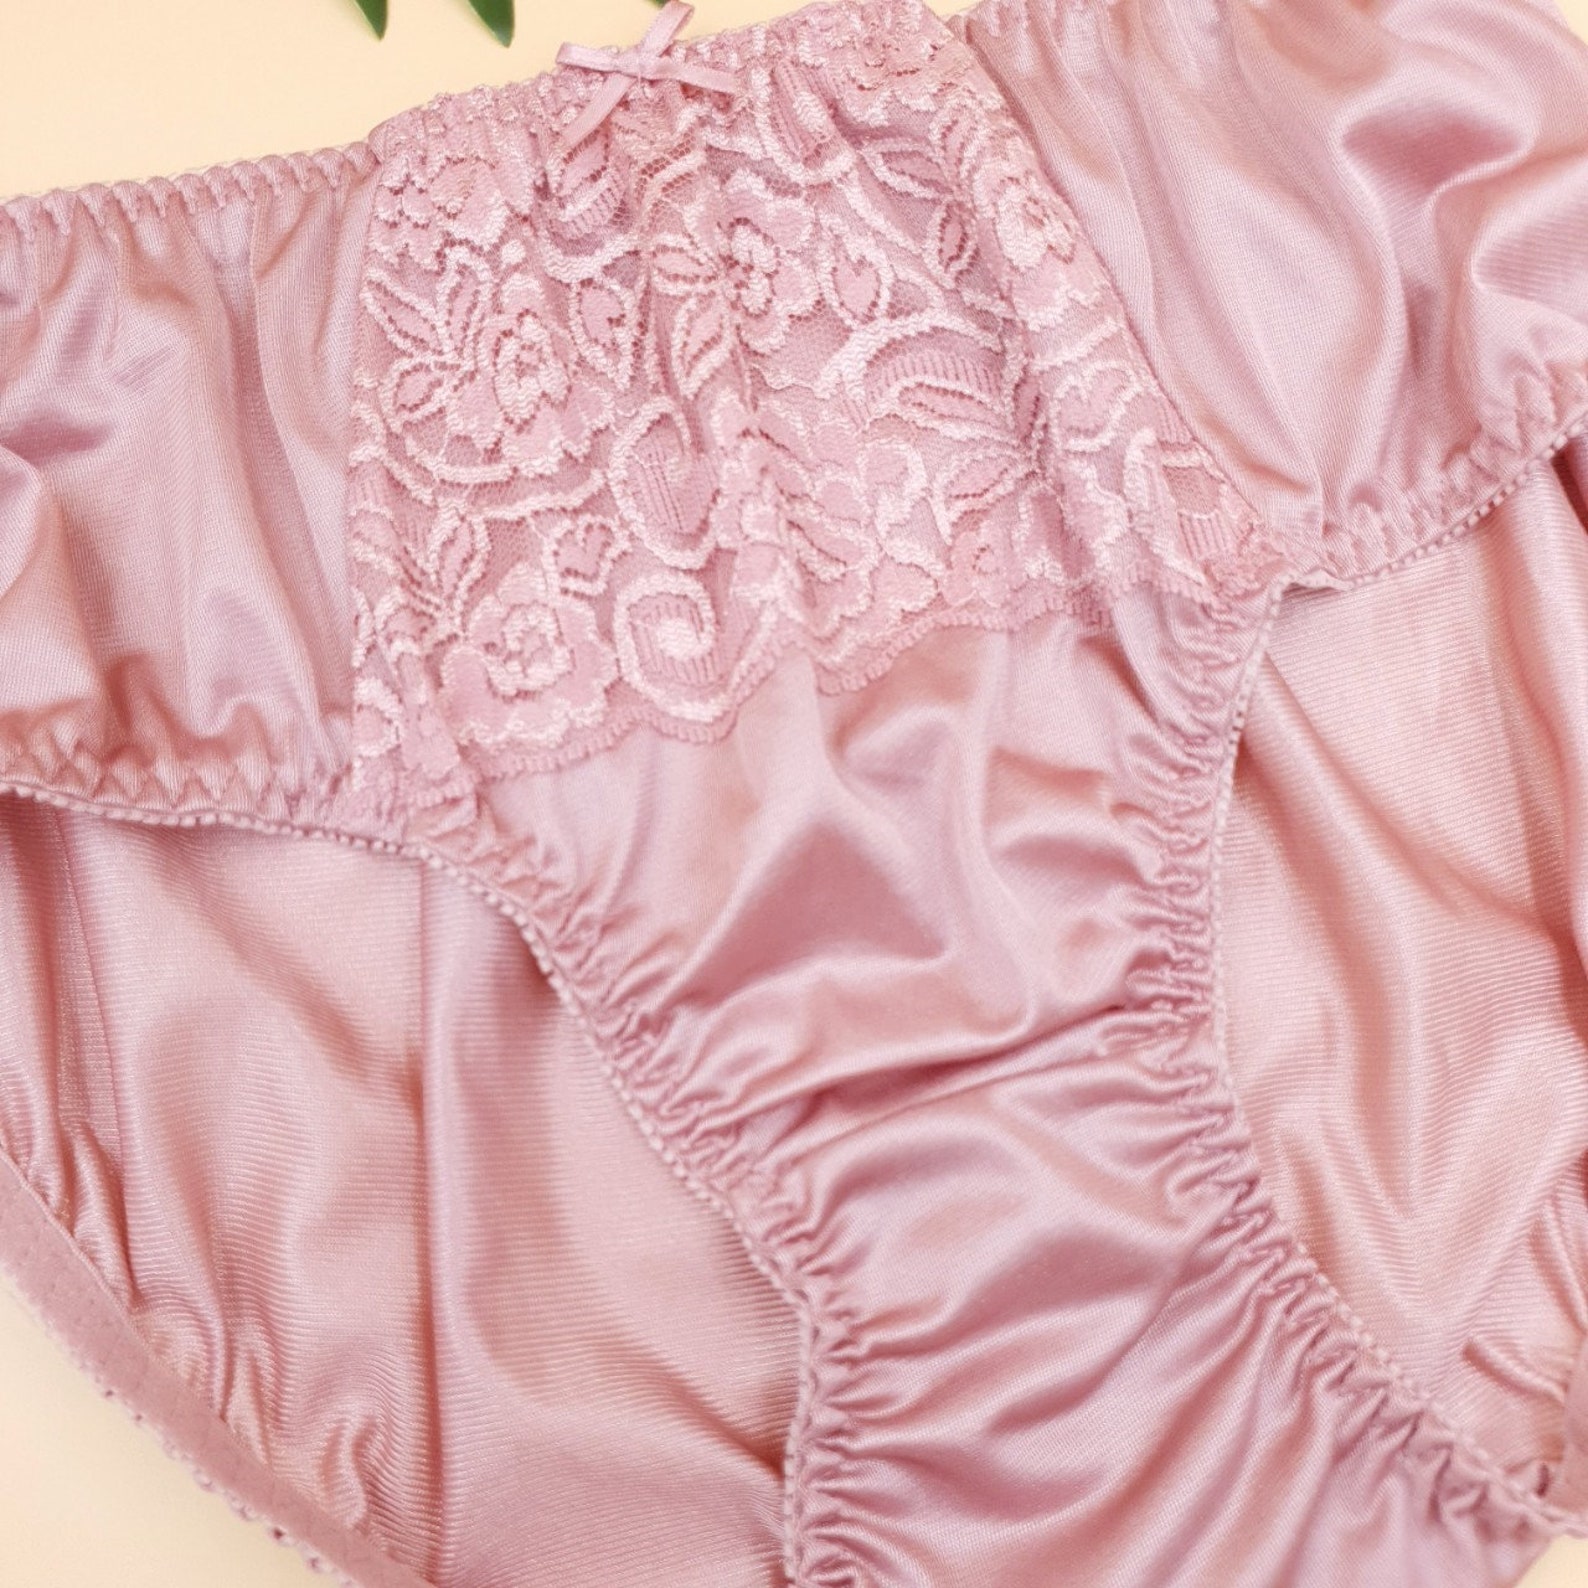 2XL panties Pink panties Vintage style | Etsy